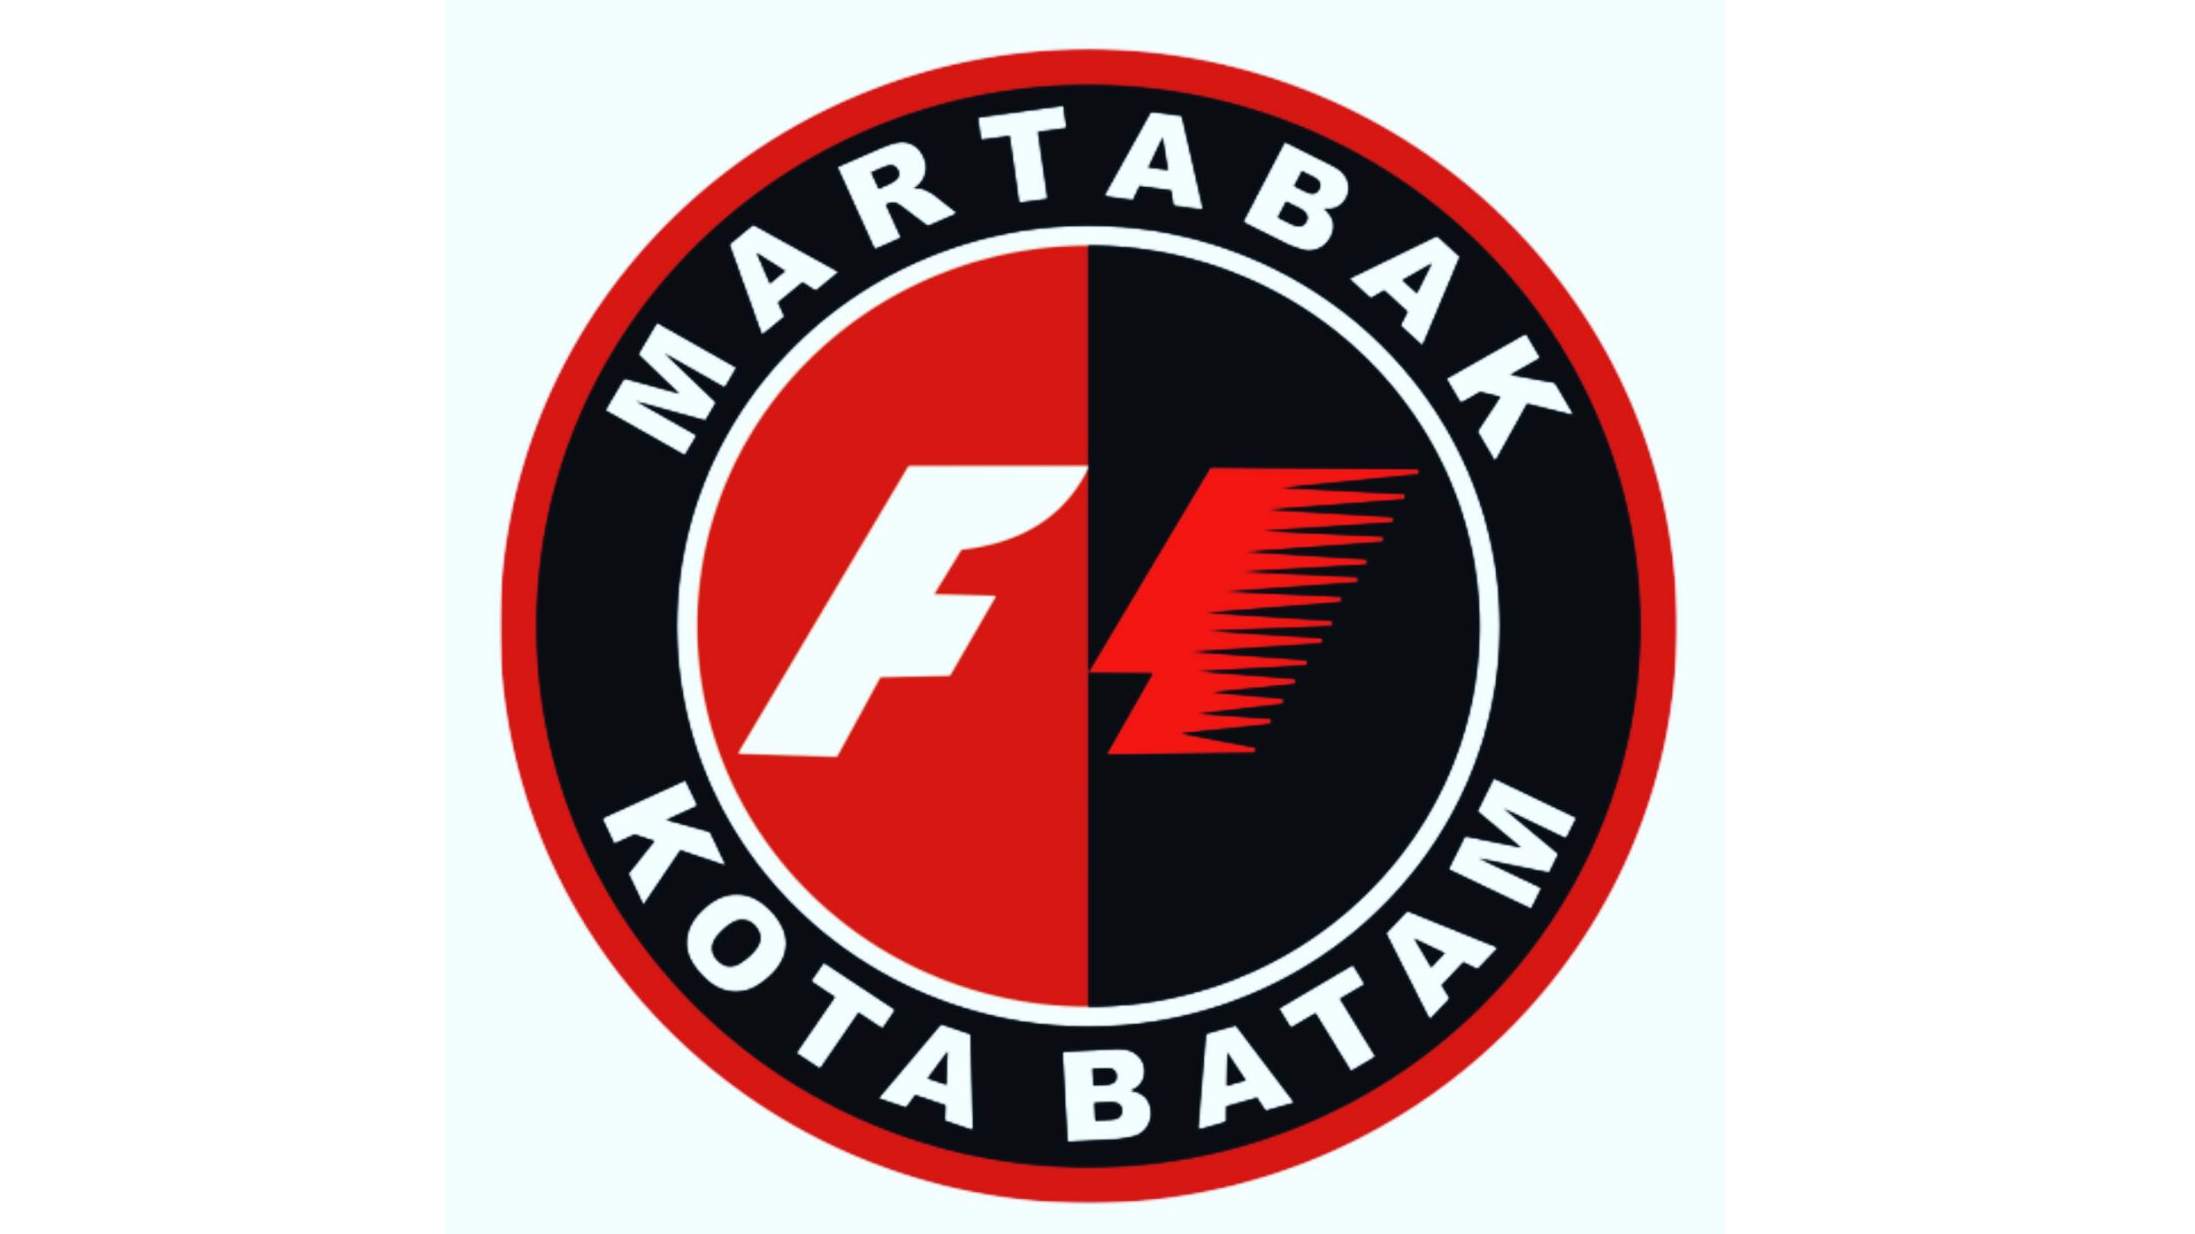 Martabak F1 Martabak Kota Batam, Mega Lagenda